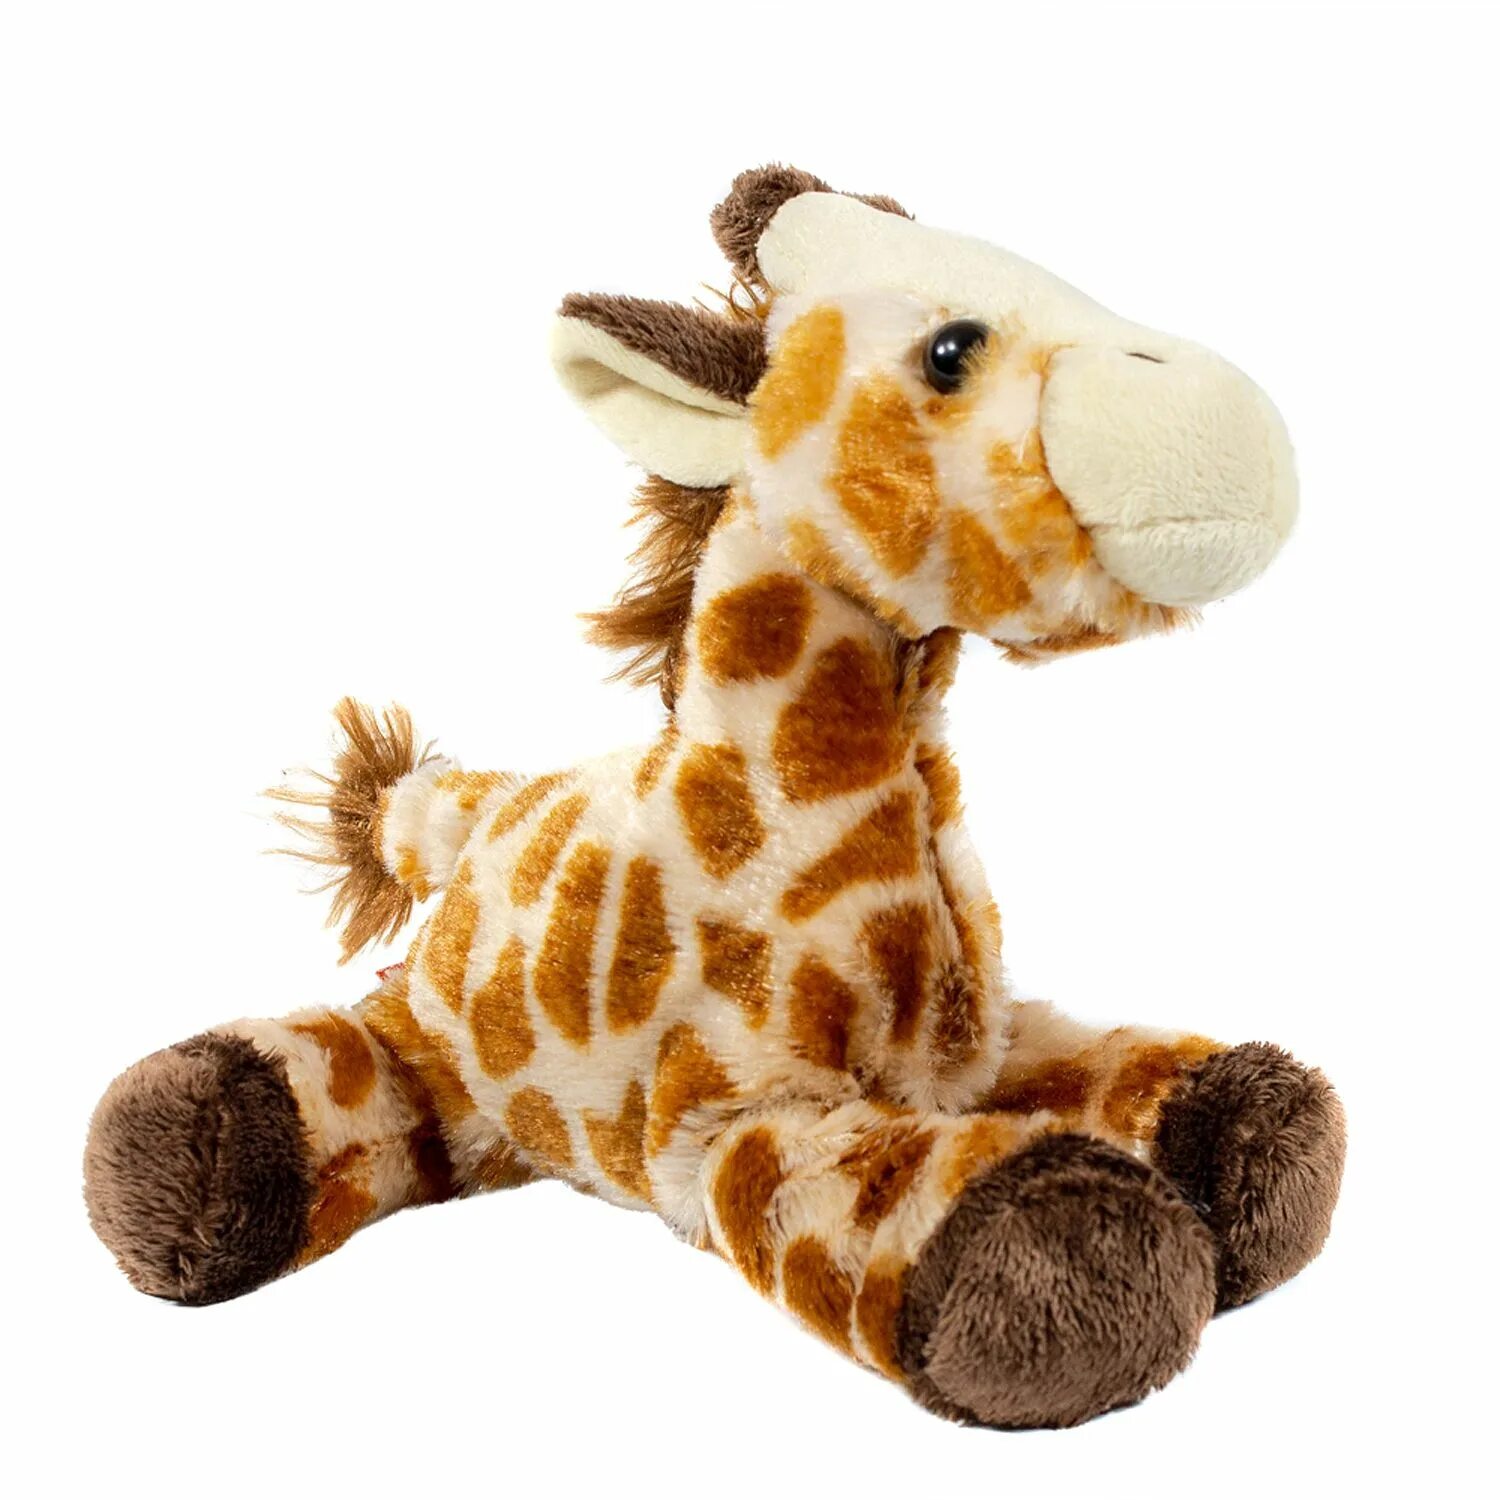 Купить жирафа игрушку. Мягкая игрушка ty Pluffies Жираф TIPTOP 25 см. Wild Republic игрушки. Hansa Жираф 64 см. Мягкая игрушка WWF Жираф 18 см.